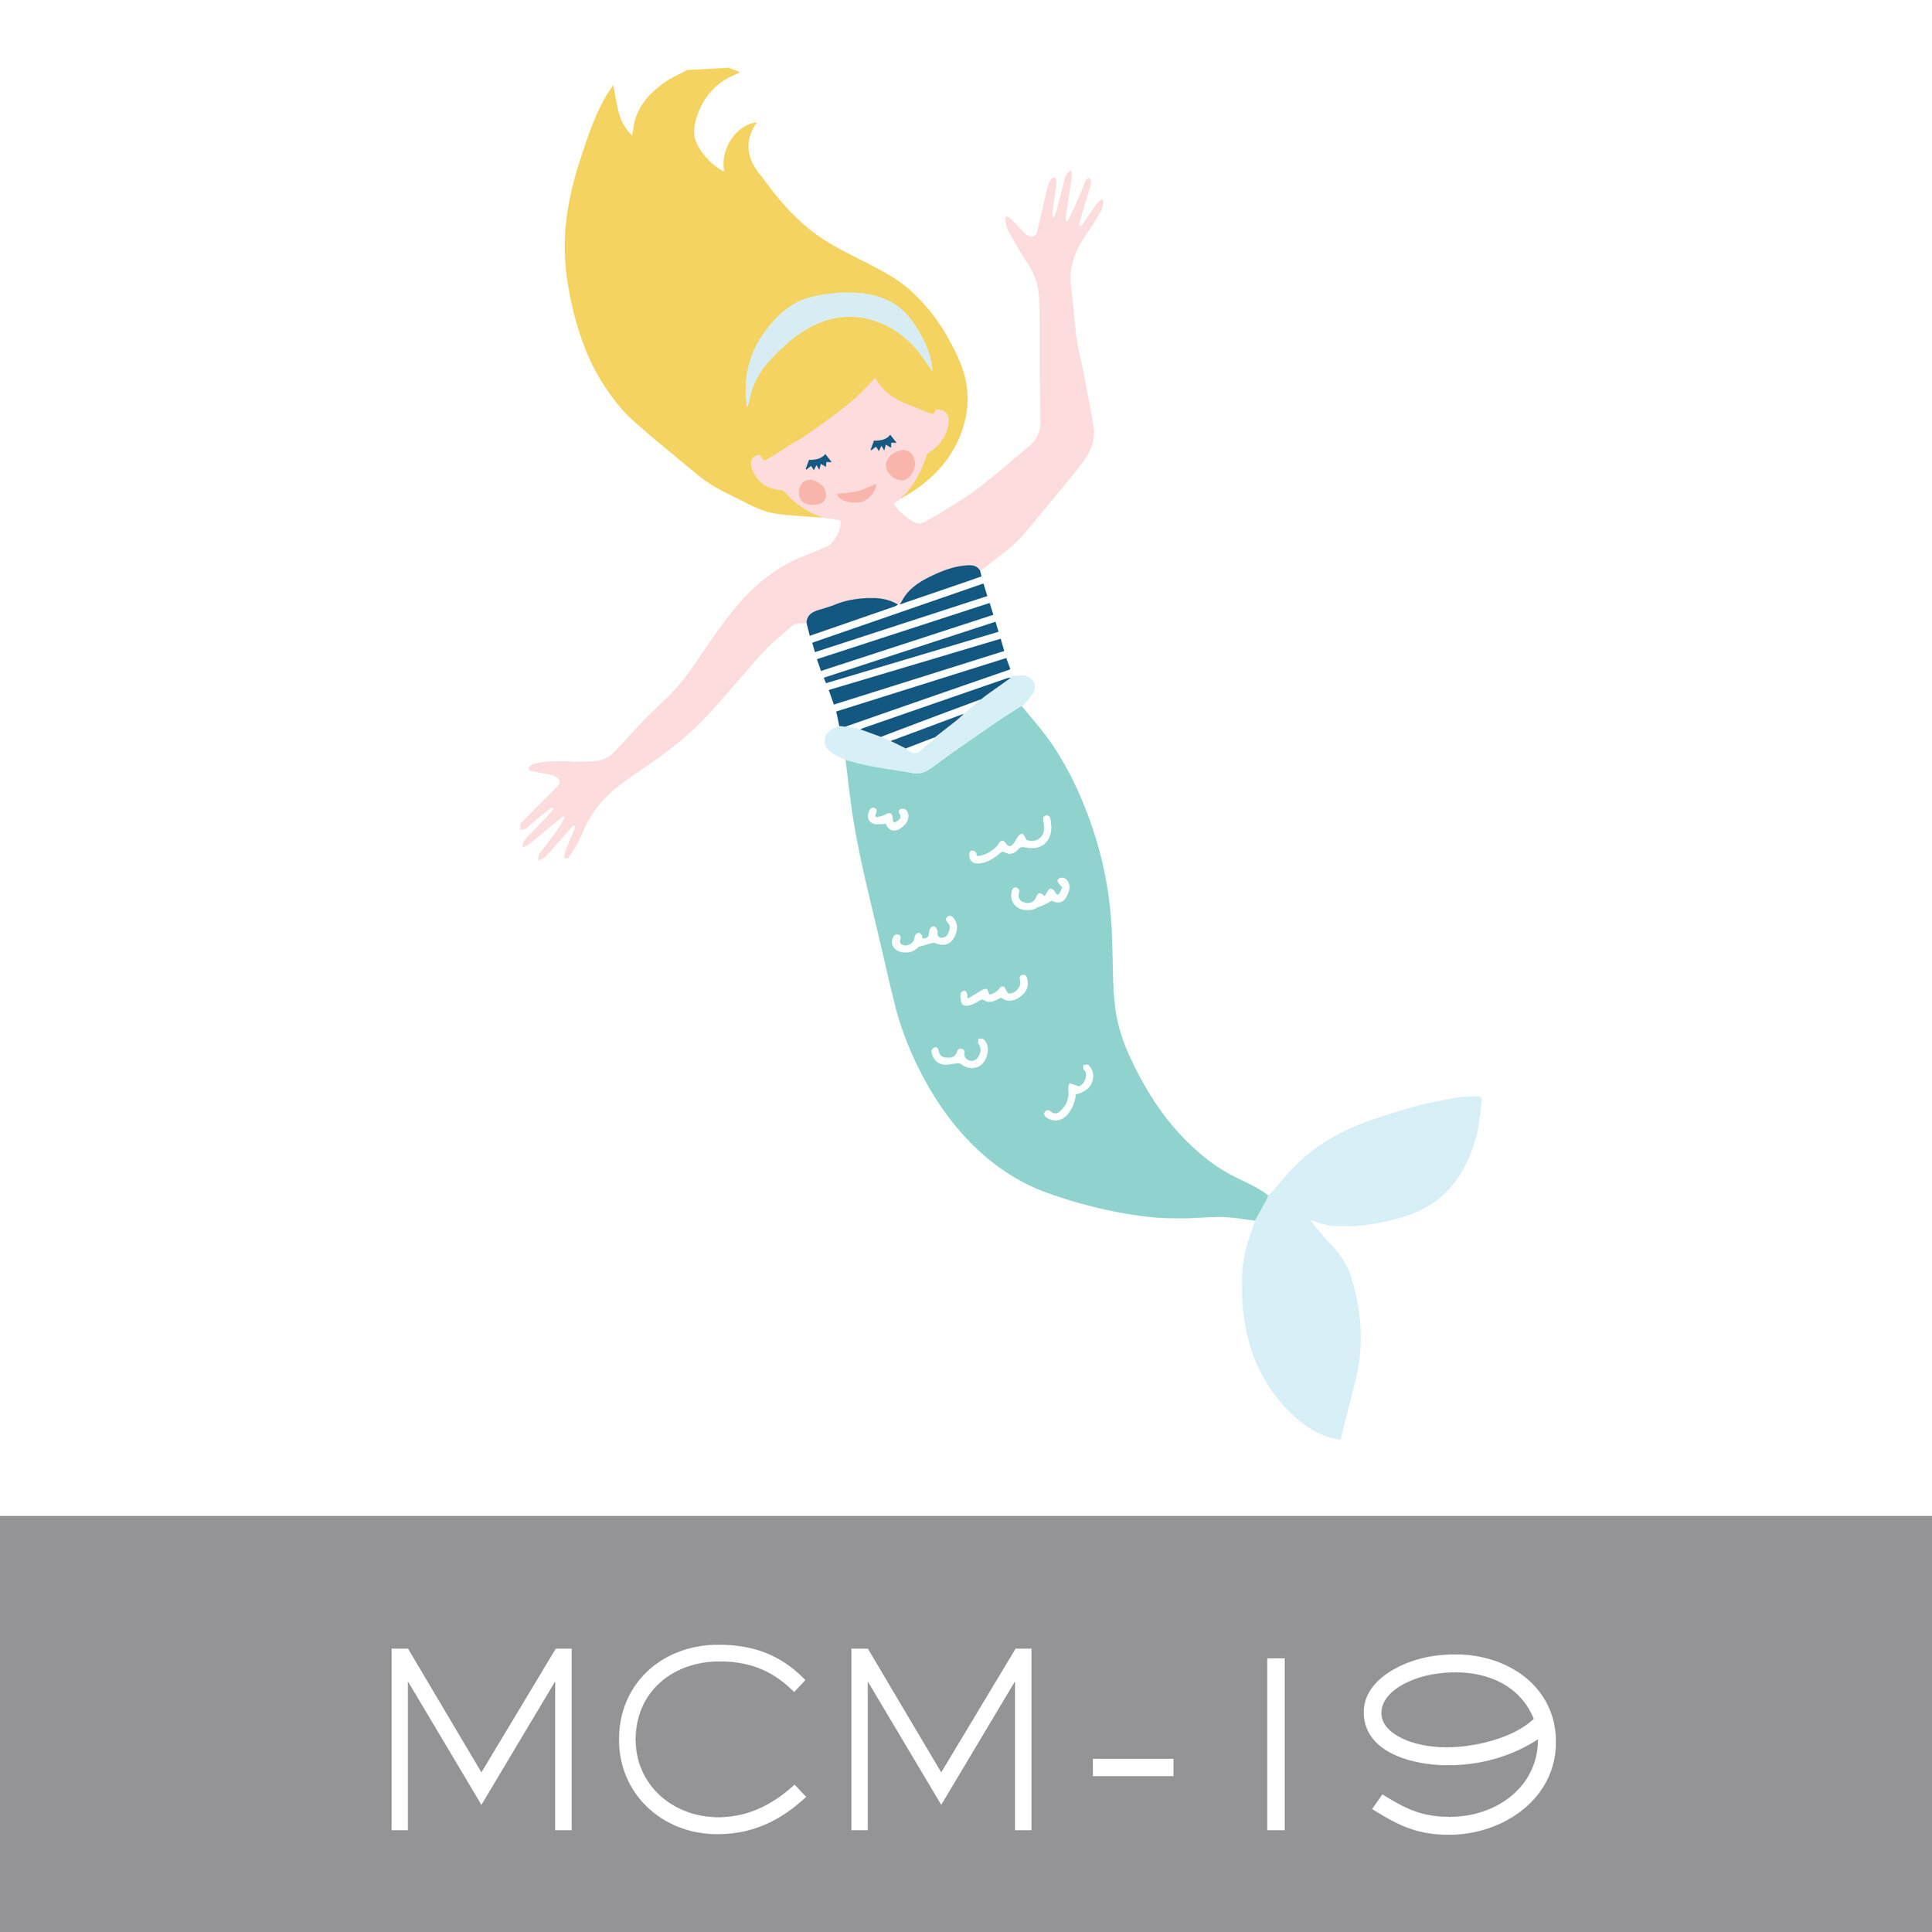 MCM-19.jpg